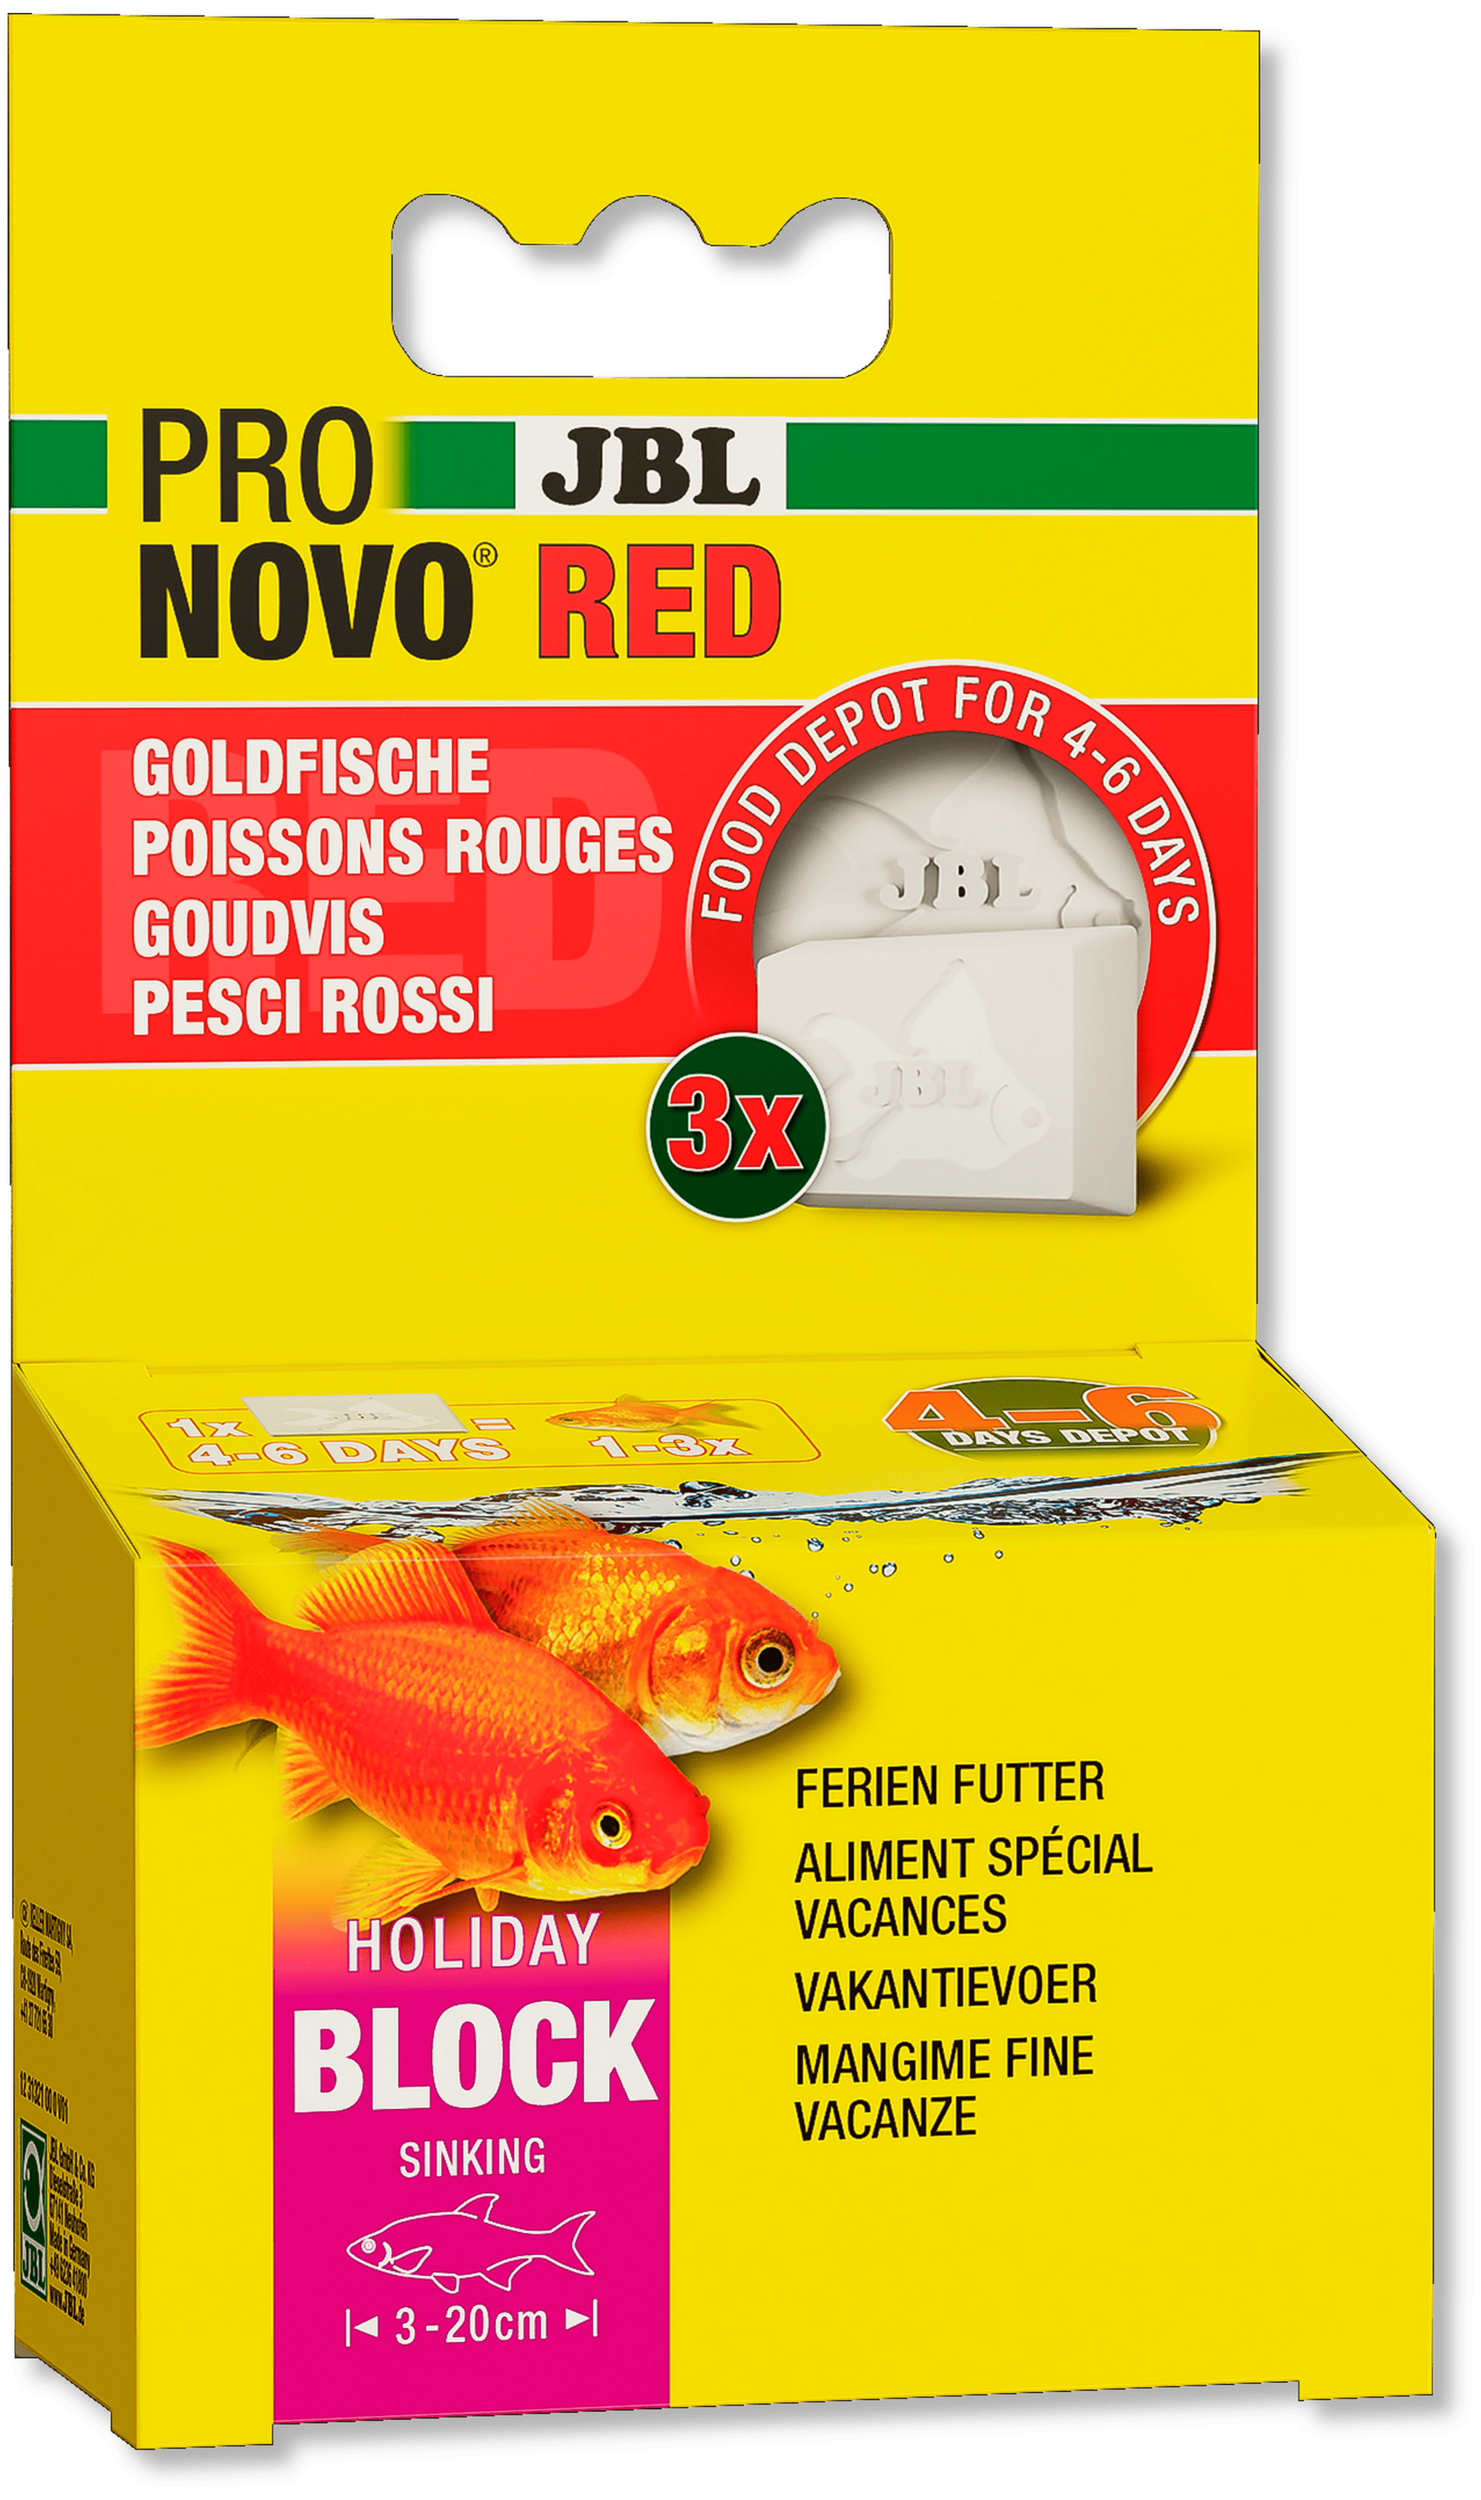 JBL ProNovo Red Holiday nourriture spéciale vacances 6 jours pour poissons rouges et voiles